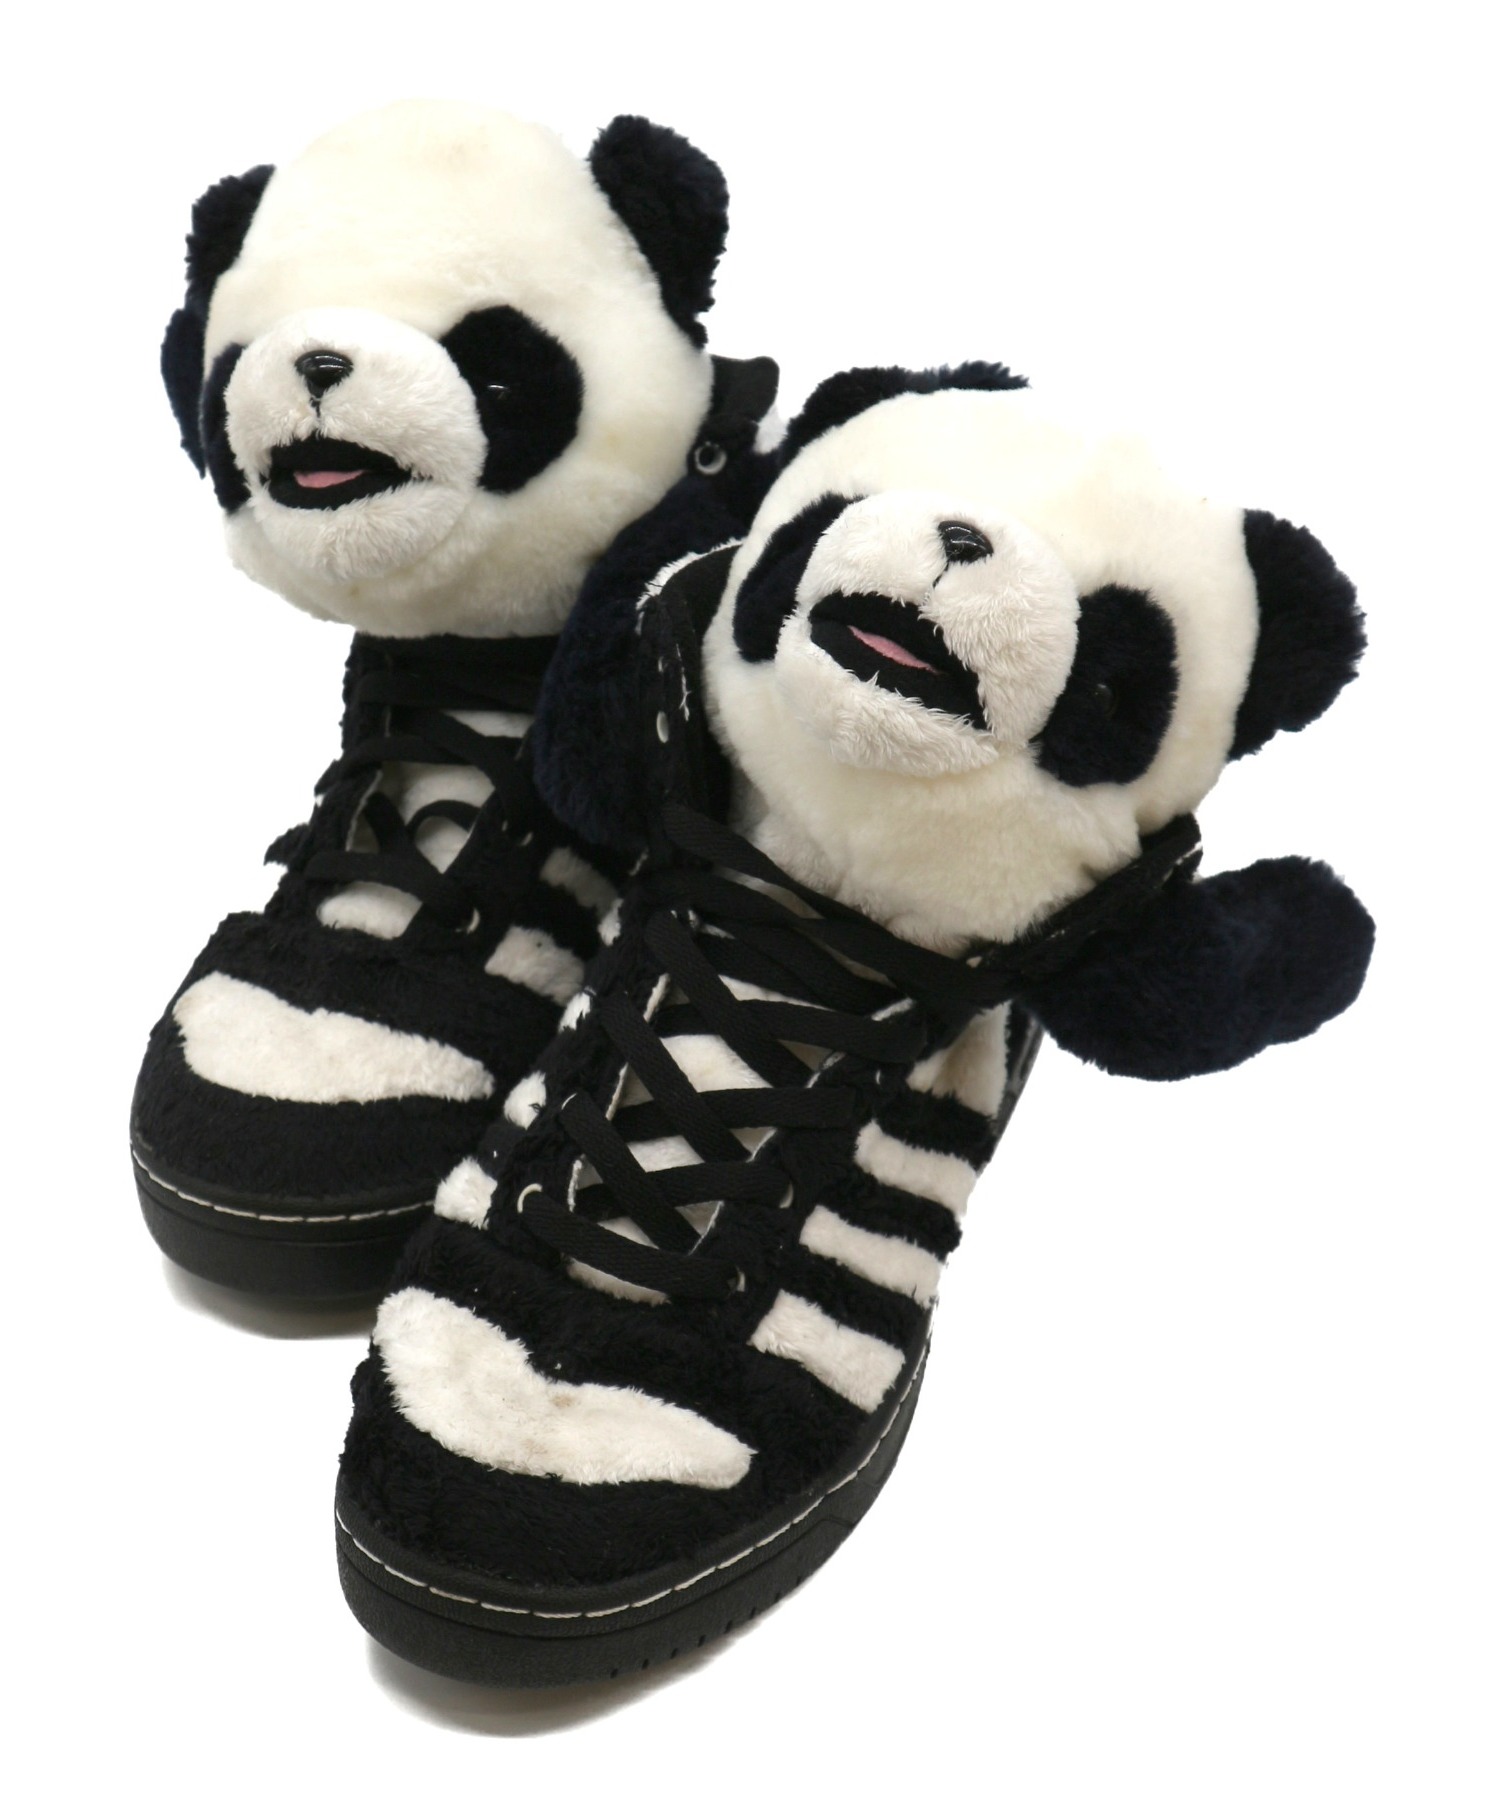 中古 古着通販 Adidas X Jeremy Scott アディダス ジェレミースコット ハイカットスニーカー ホワイト ブラック サイズ 26 5 Panda Bear U ブランド 古着通販 トレファク公式 Trefac Fashion